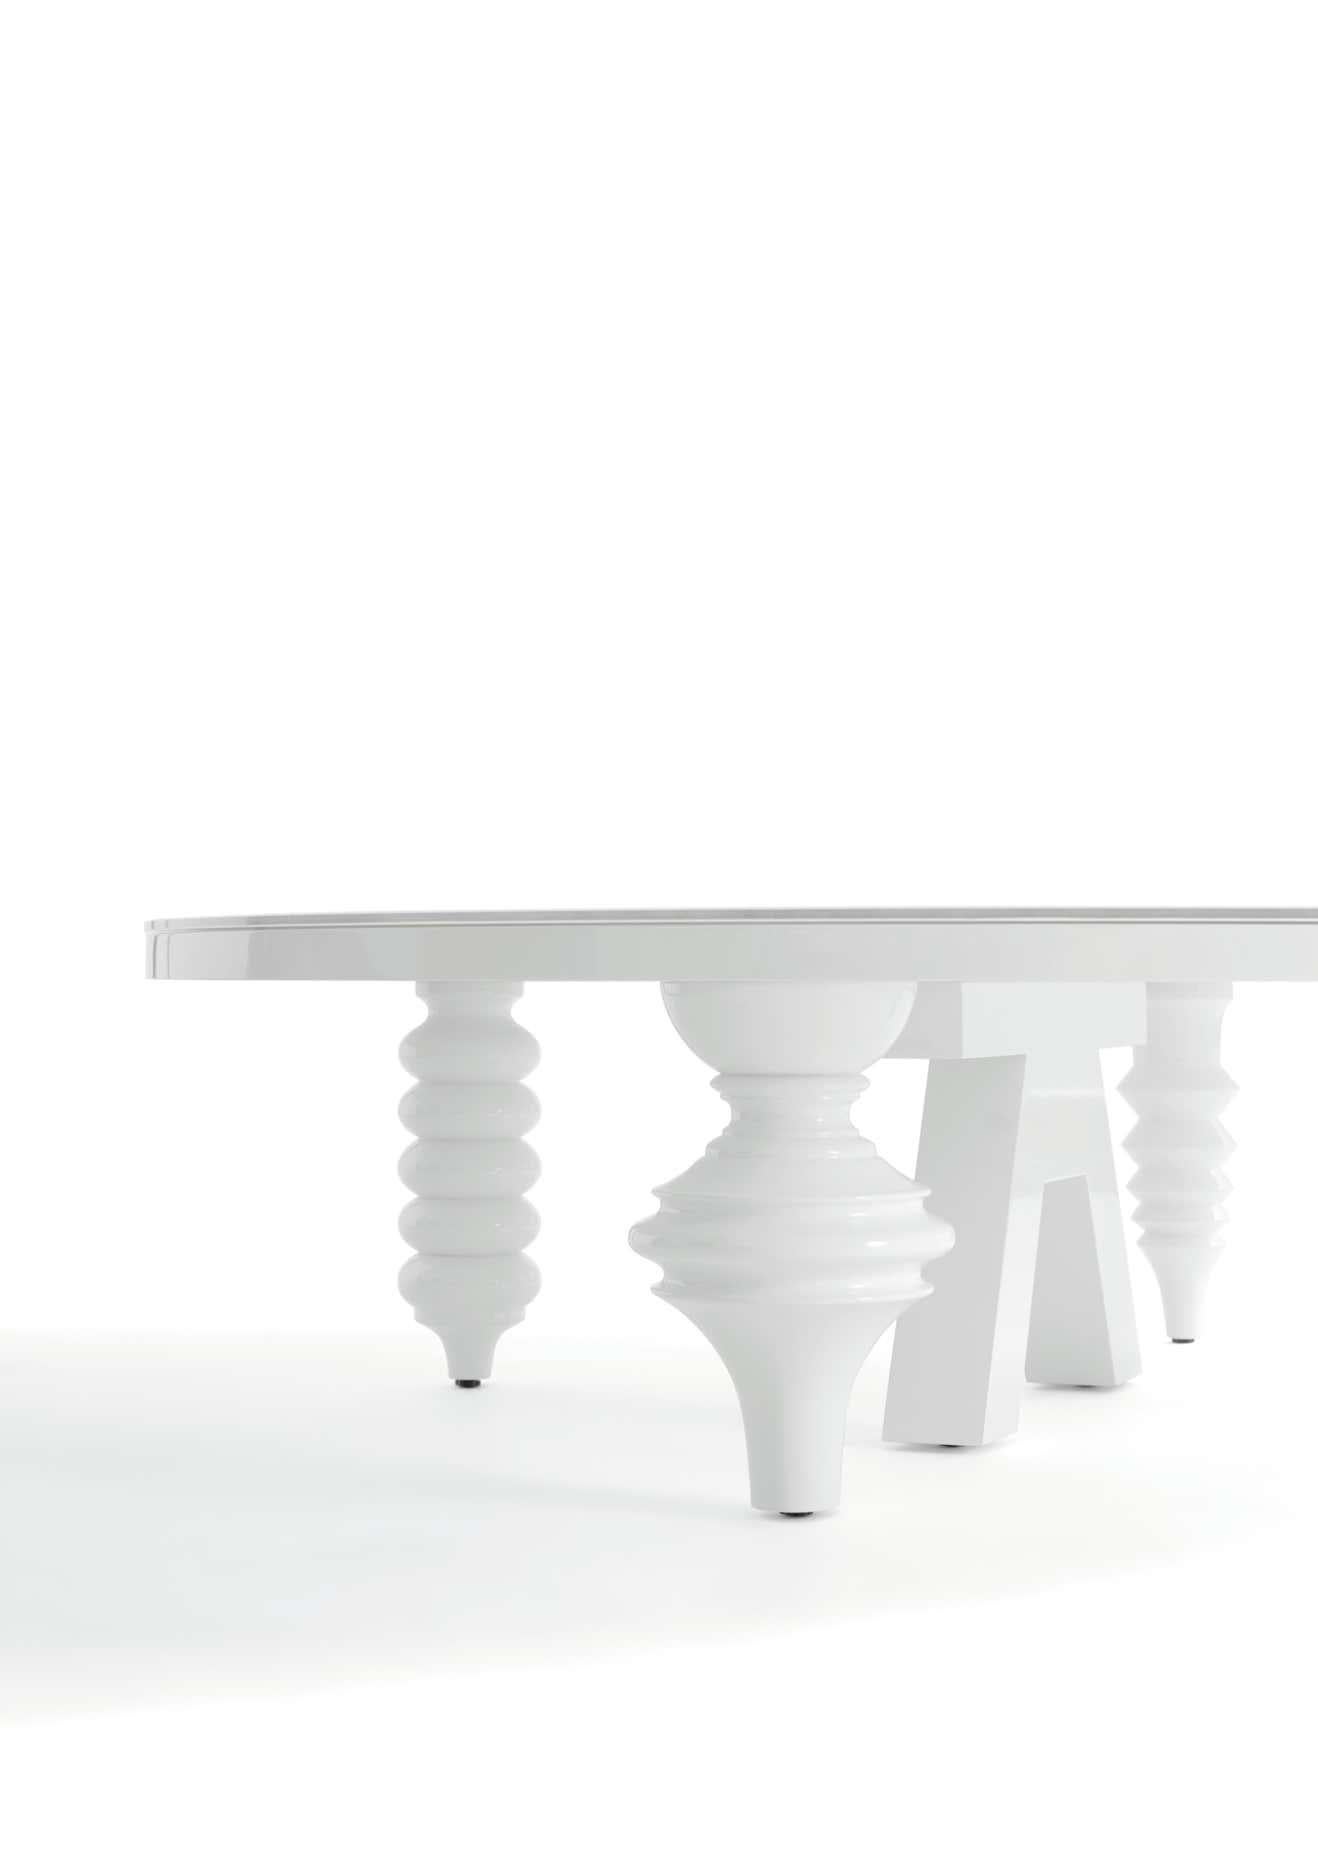 Weißer Multileg Low Tisch Hochglanz mit Glasplatte

MATERIALIEN: 
MDF, Lack, Glas

Abmessungen: 
Durchm. 120 cm x H 35 cm

Der Multileg-Tisch entstand auf naheliegende Weise aus dem Multileg-Schrank. Mit denselben Beinen entwarf Jaime vier